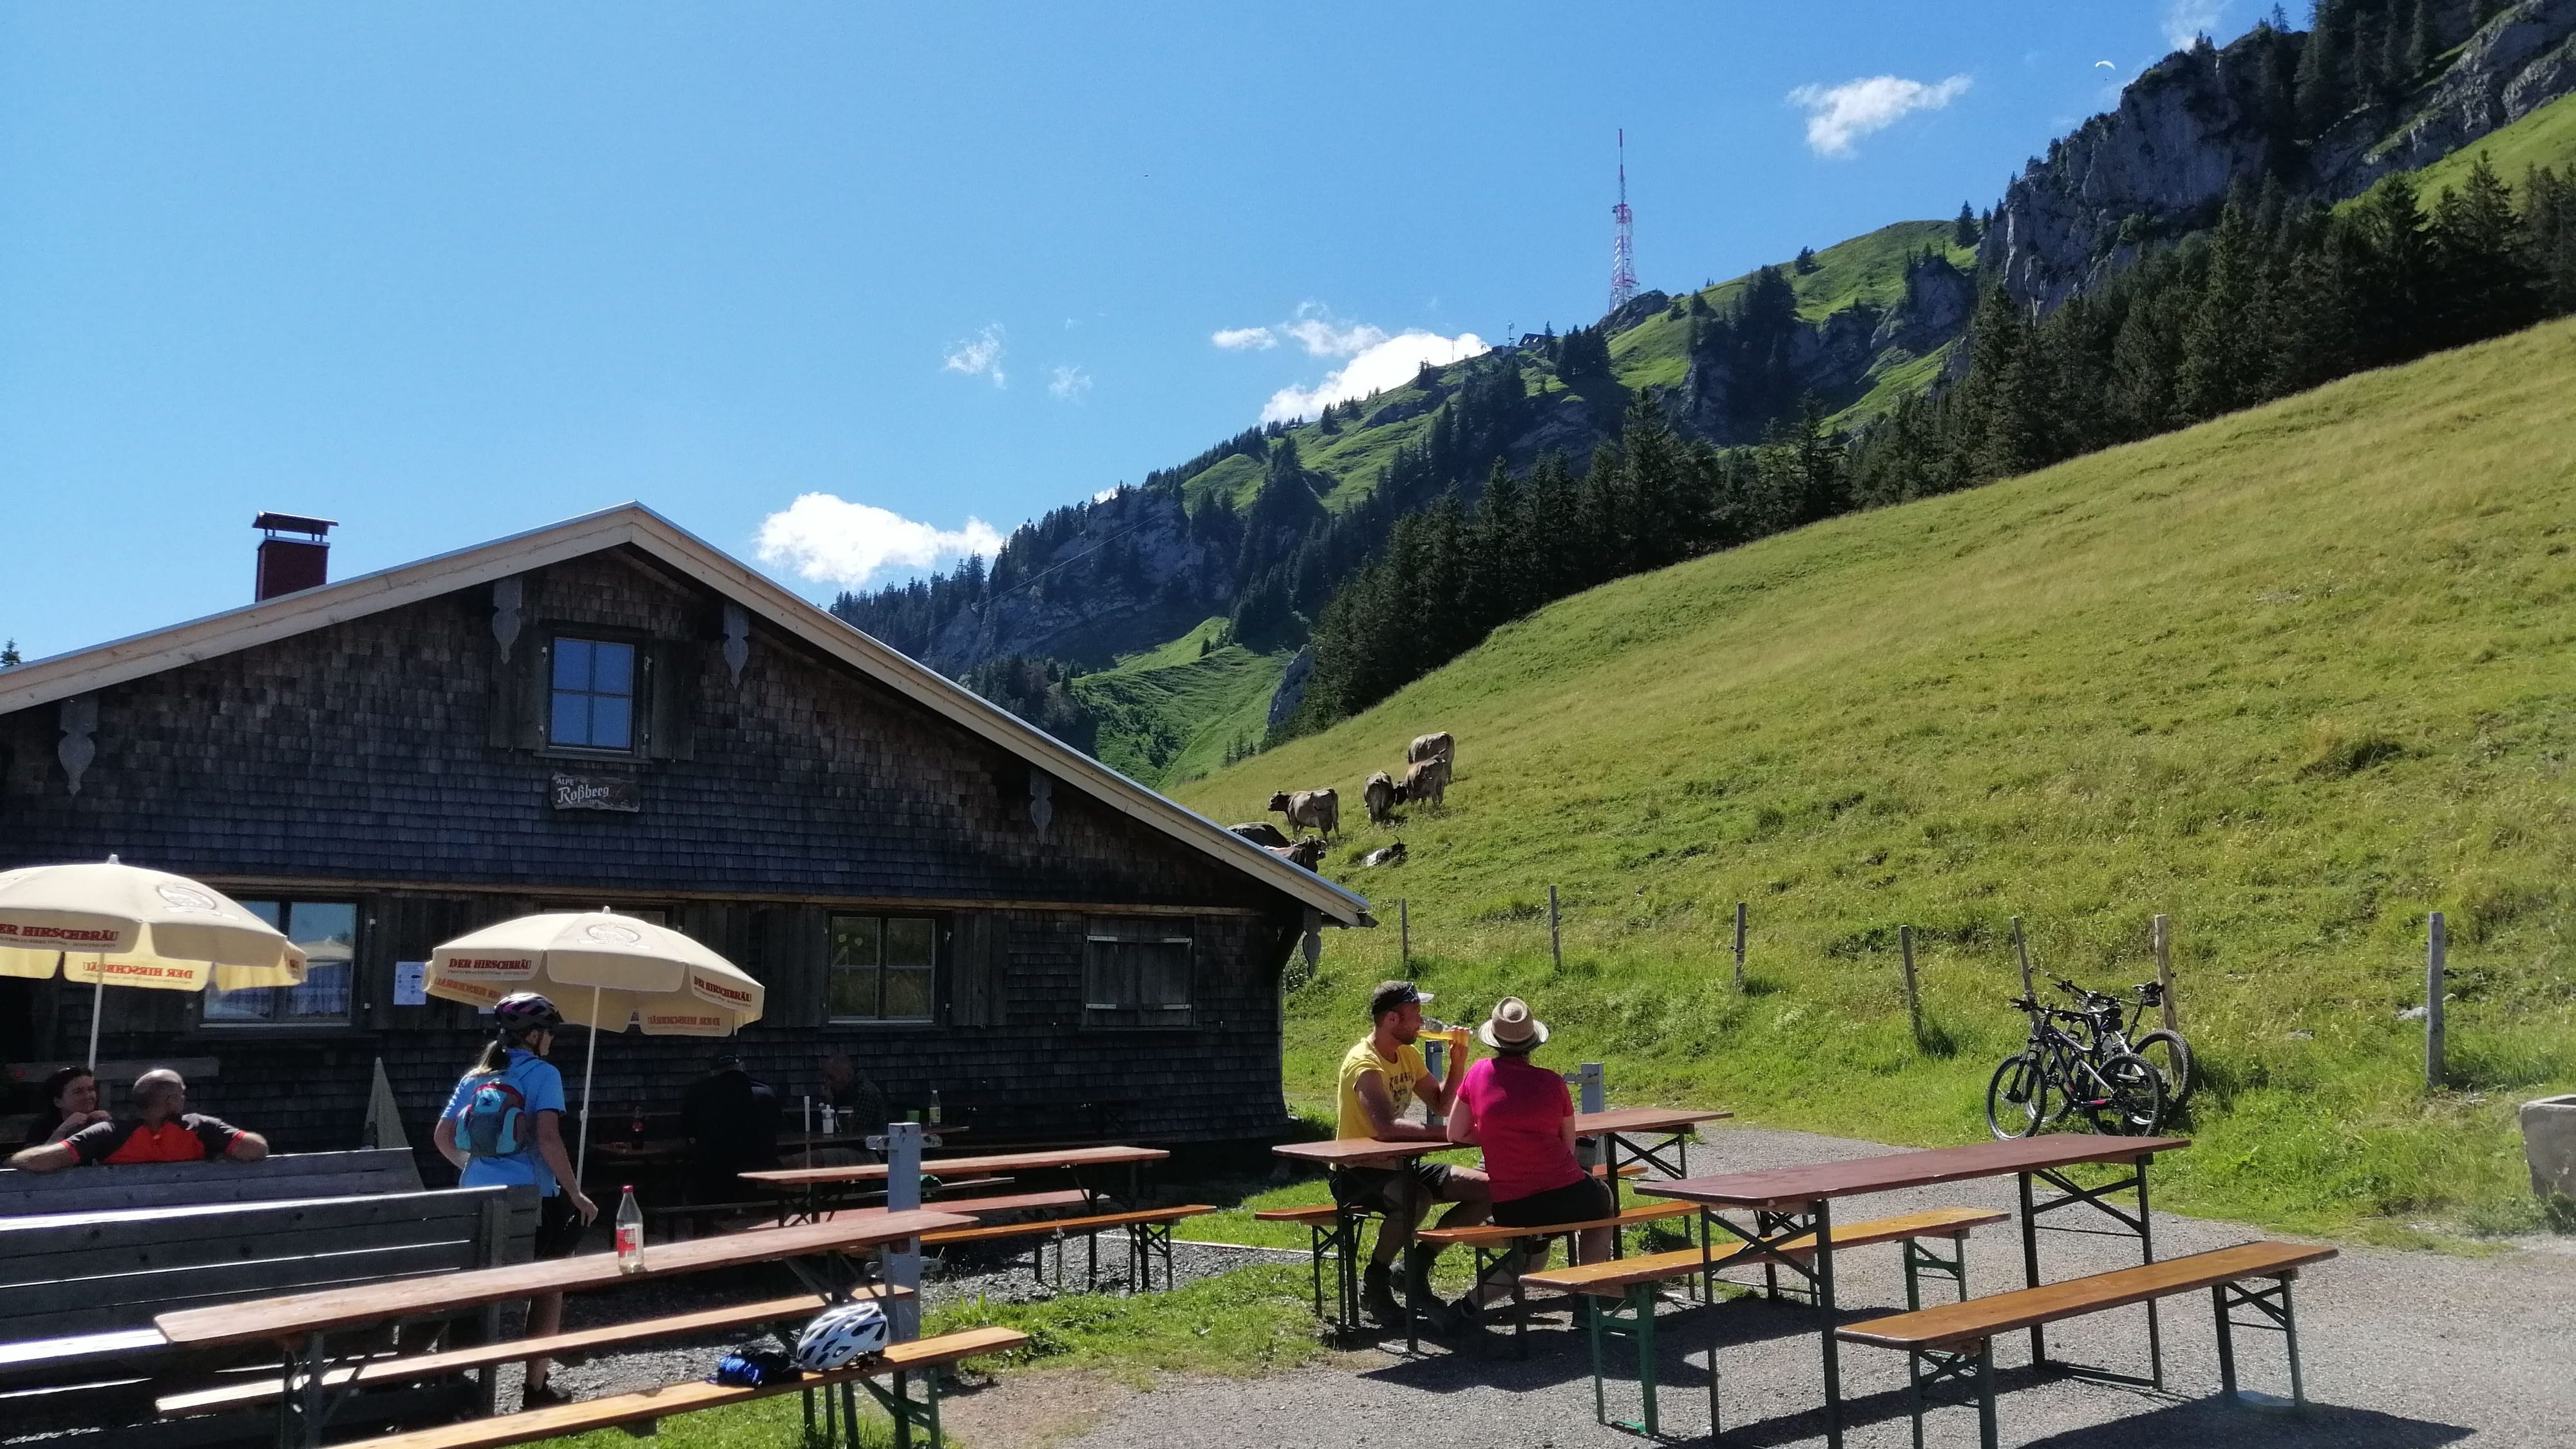 Wandern in Bayern: Geheimtipps für den Urlaub in den Bergen